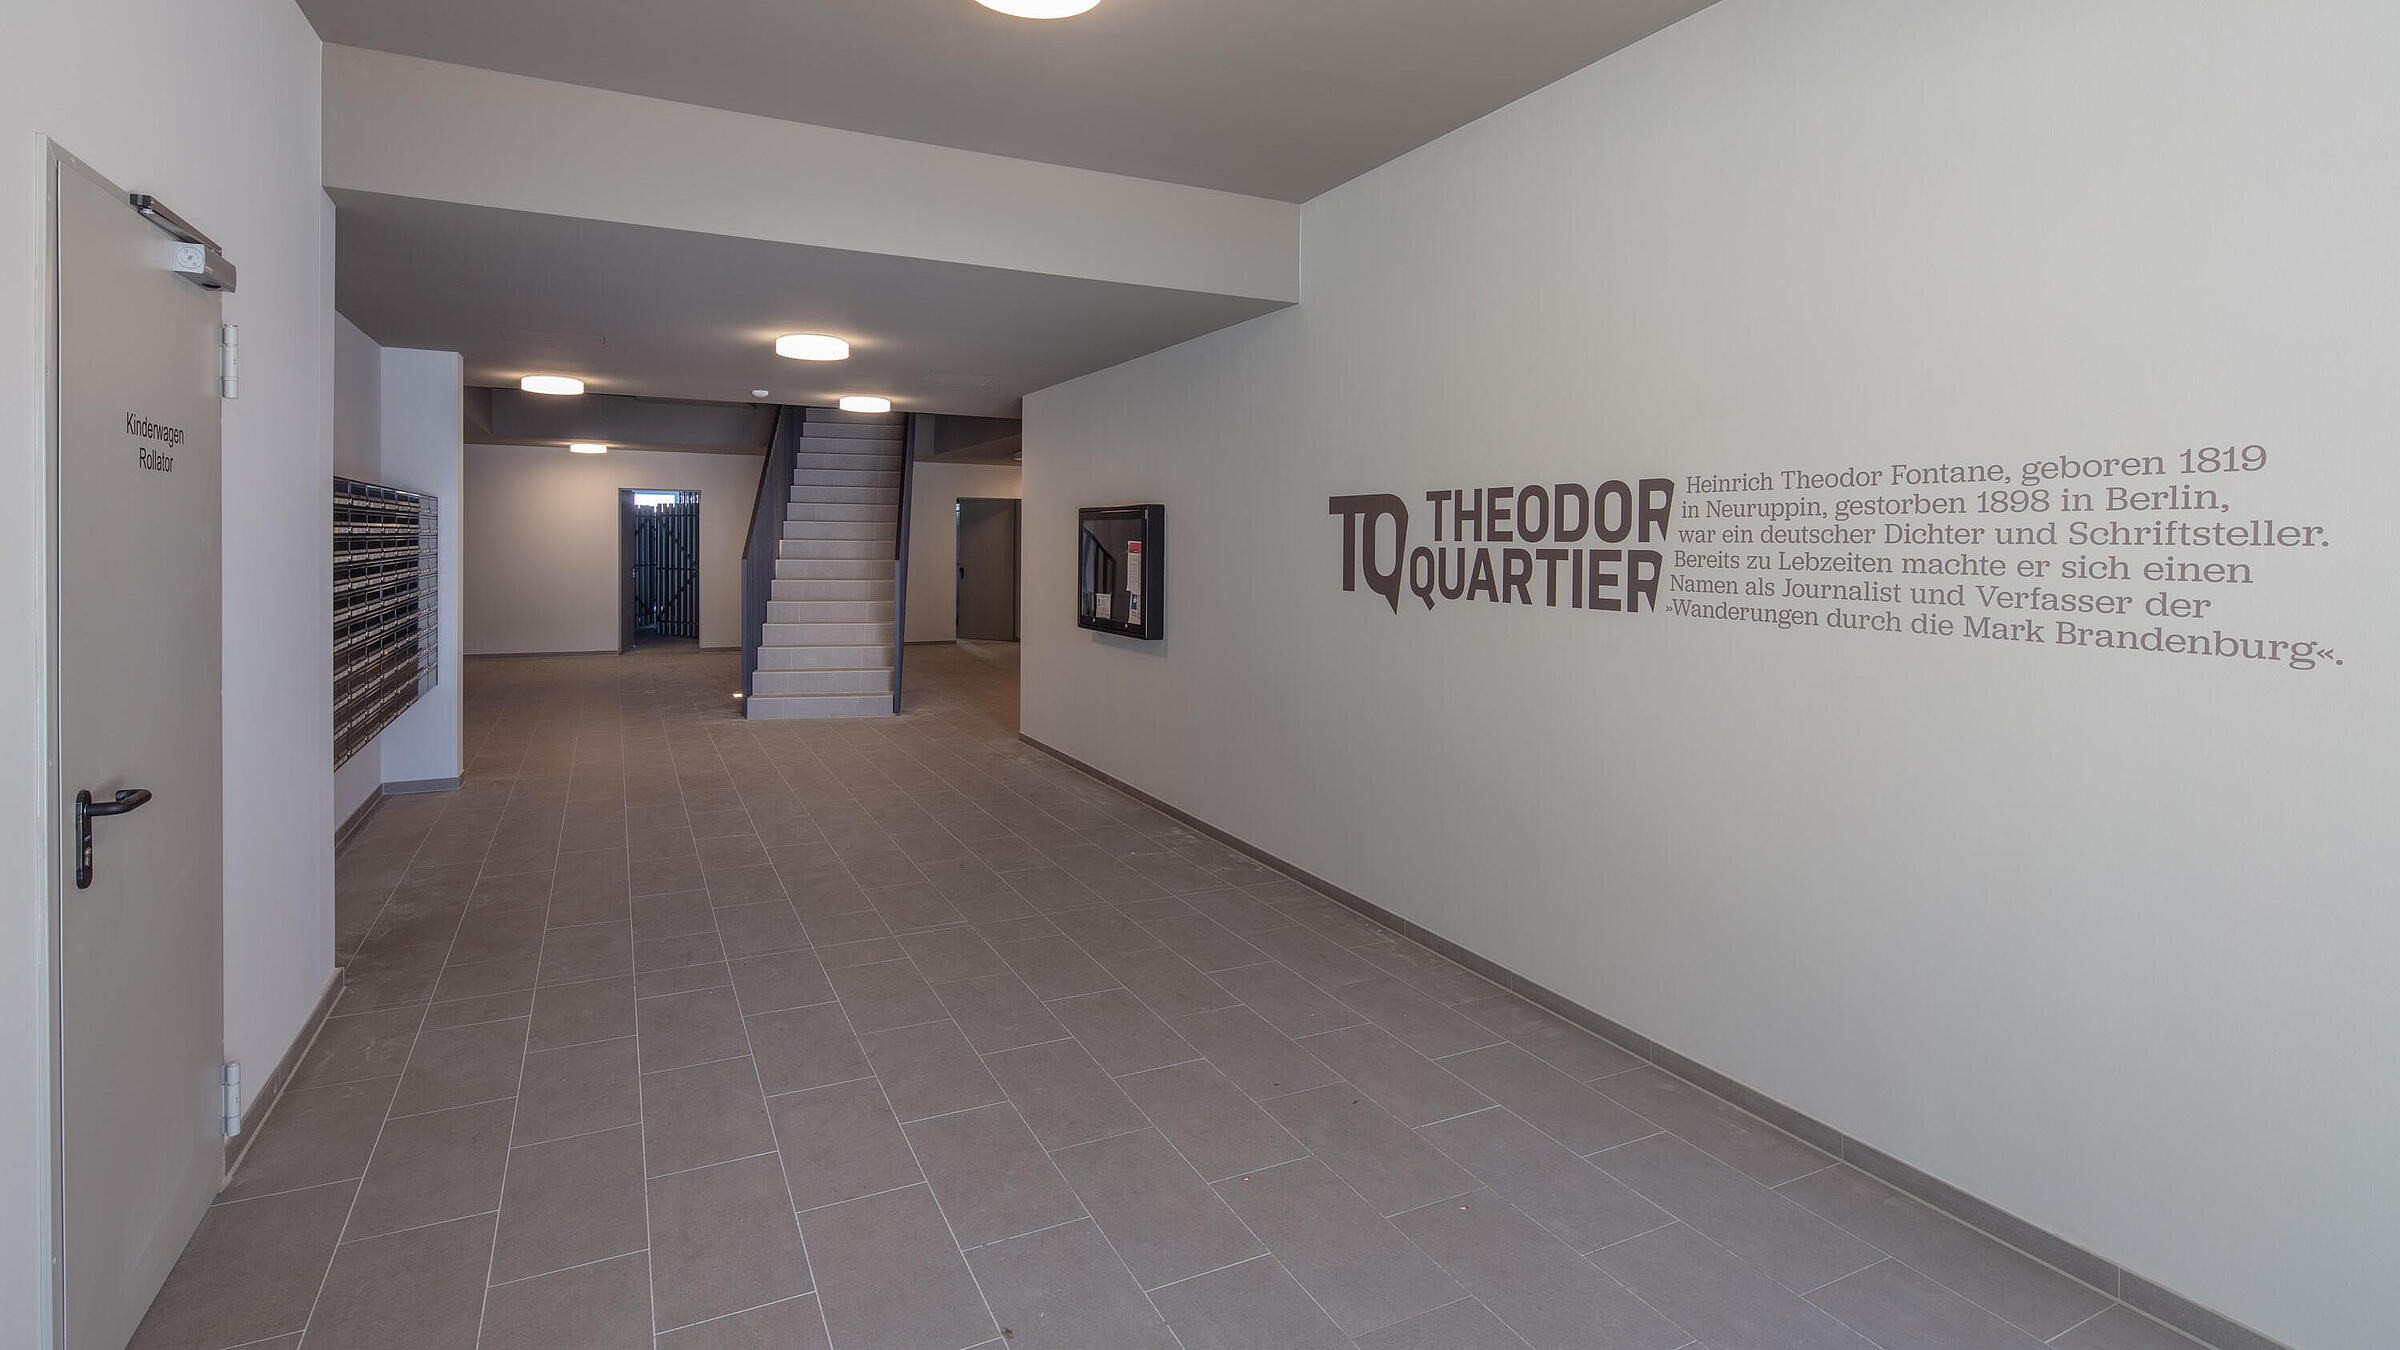 Theodor Quartier: Eingangsbereich in einem der Wohnhäuser